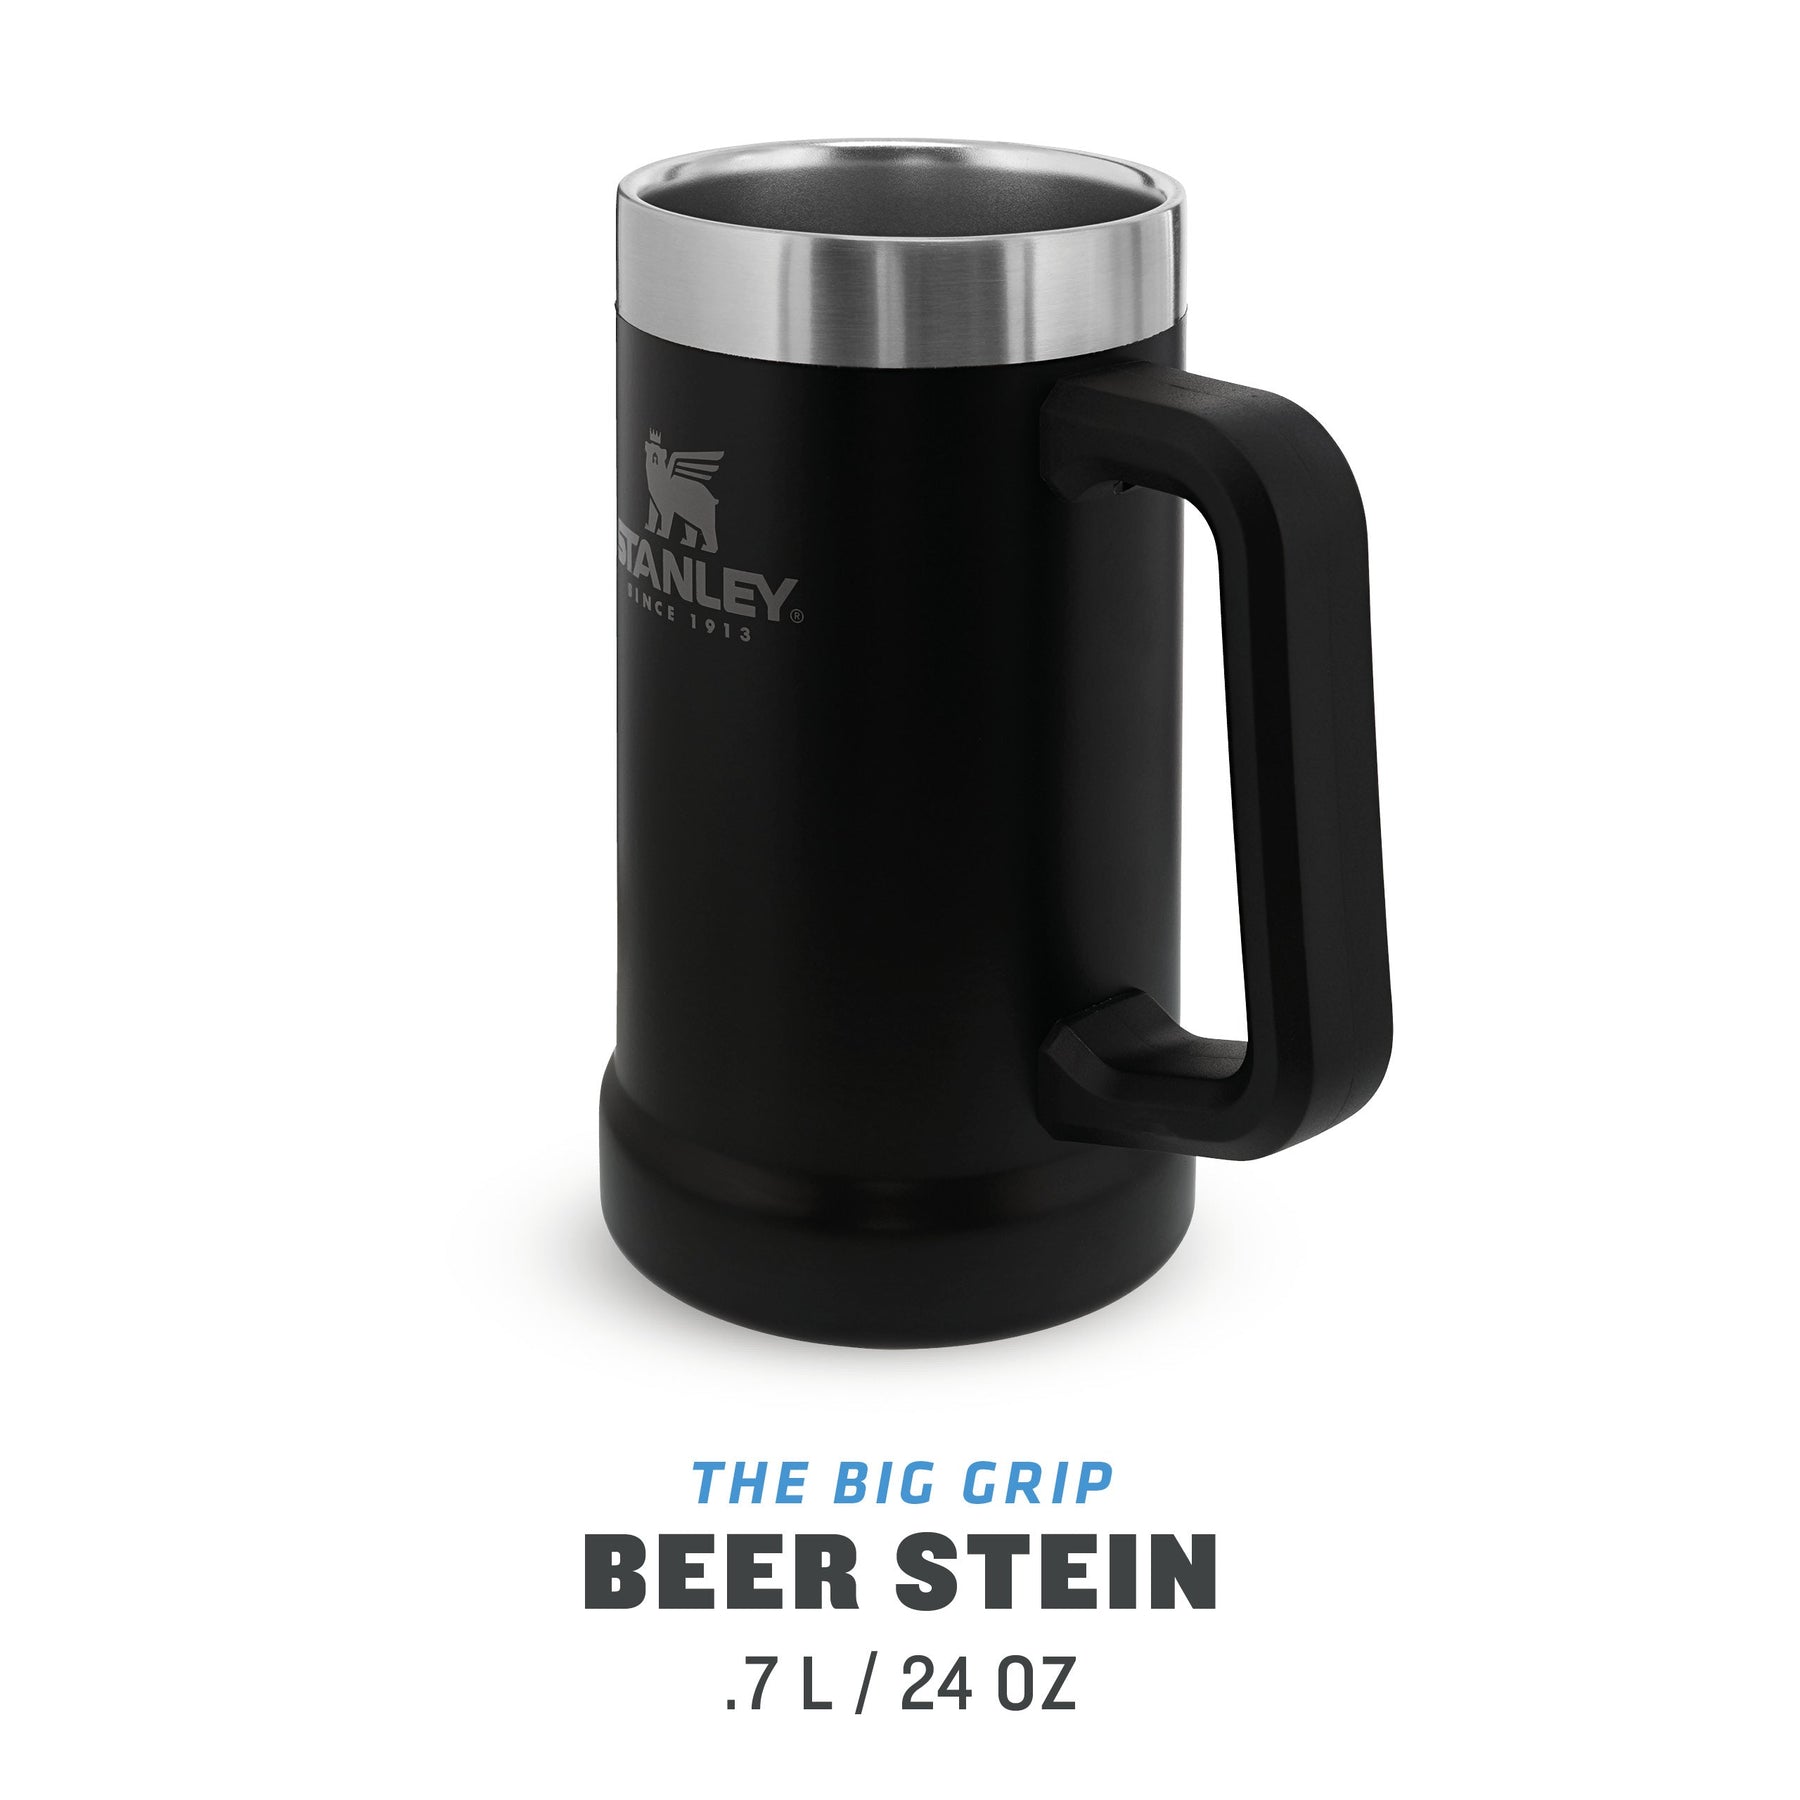 Stanley Adventure Big Grip Beer Stein Stainless Steel Mug, 24oz 2 Pack -  NIB 41604346712